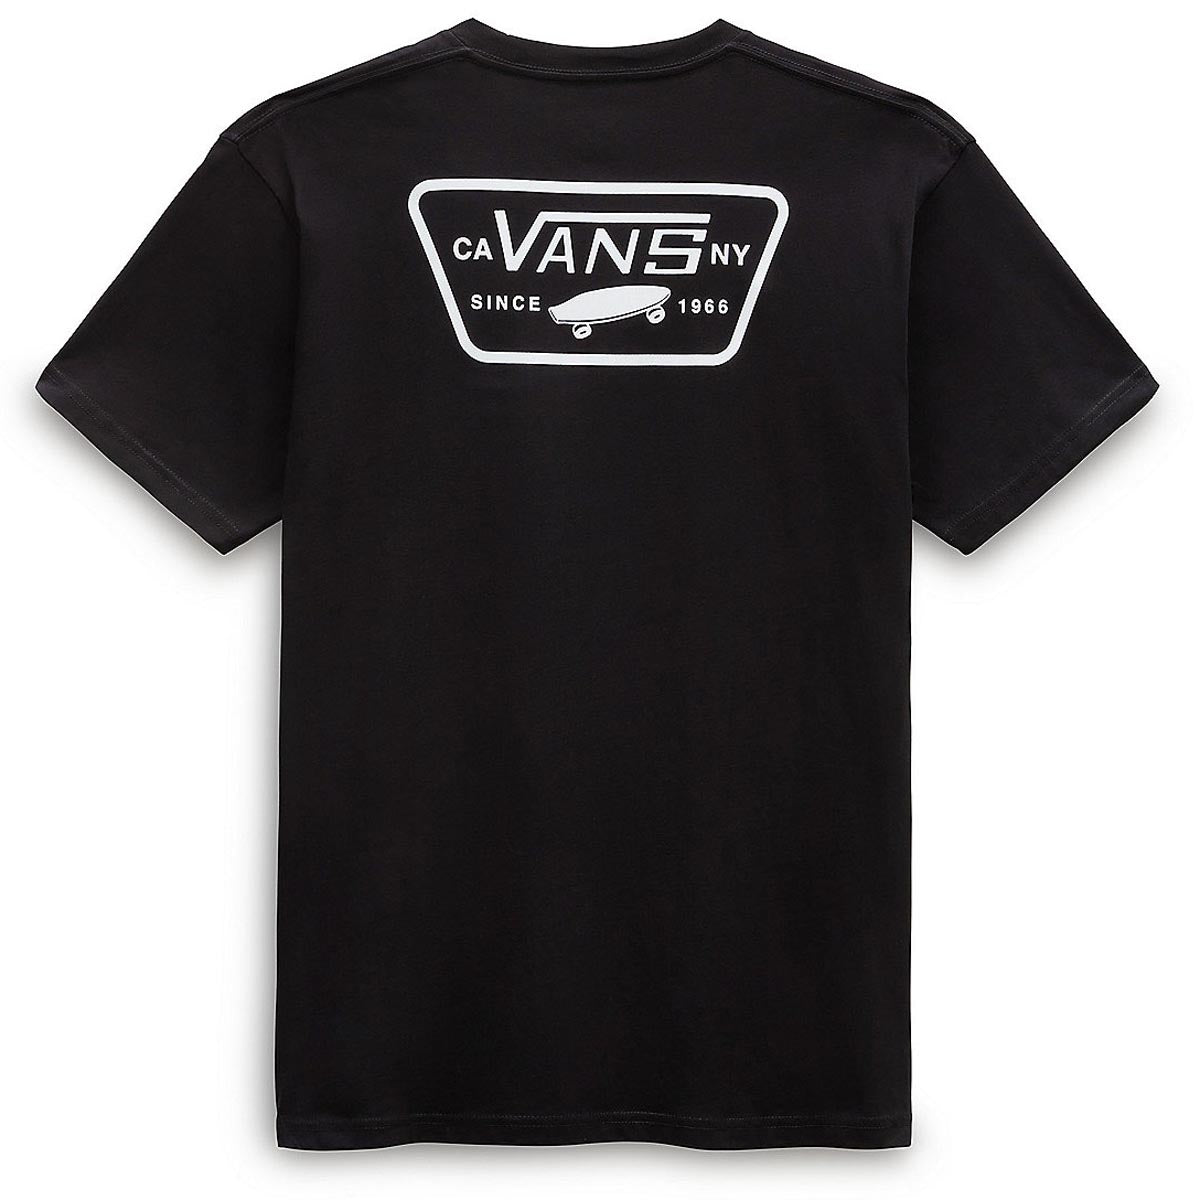 Vans Full Back Patch T-Shirt - Black/White image 2